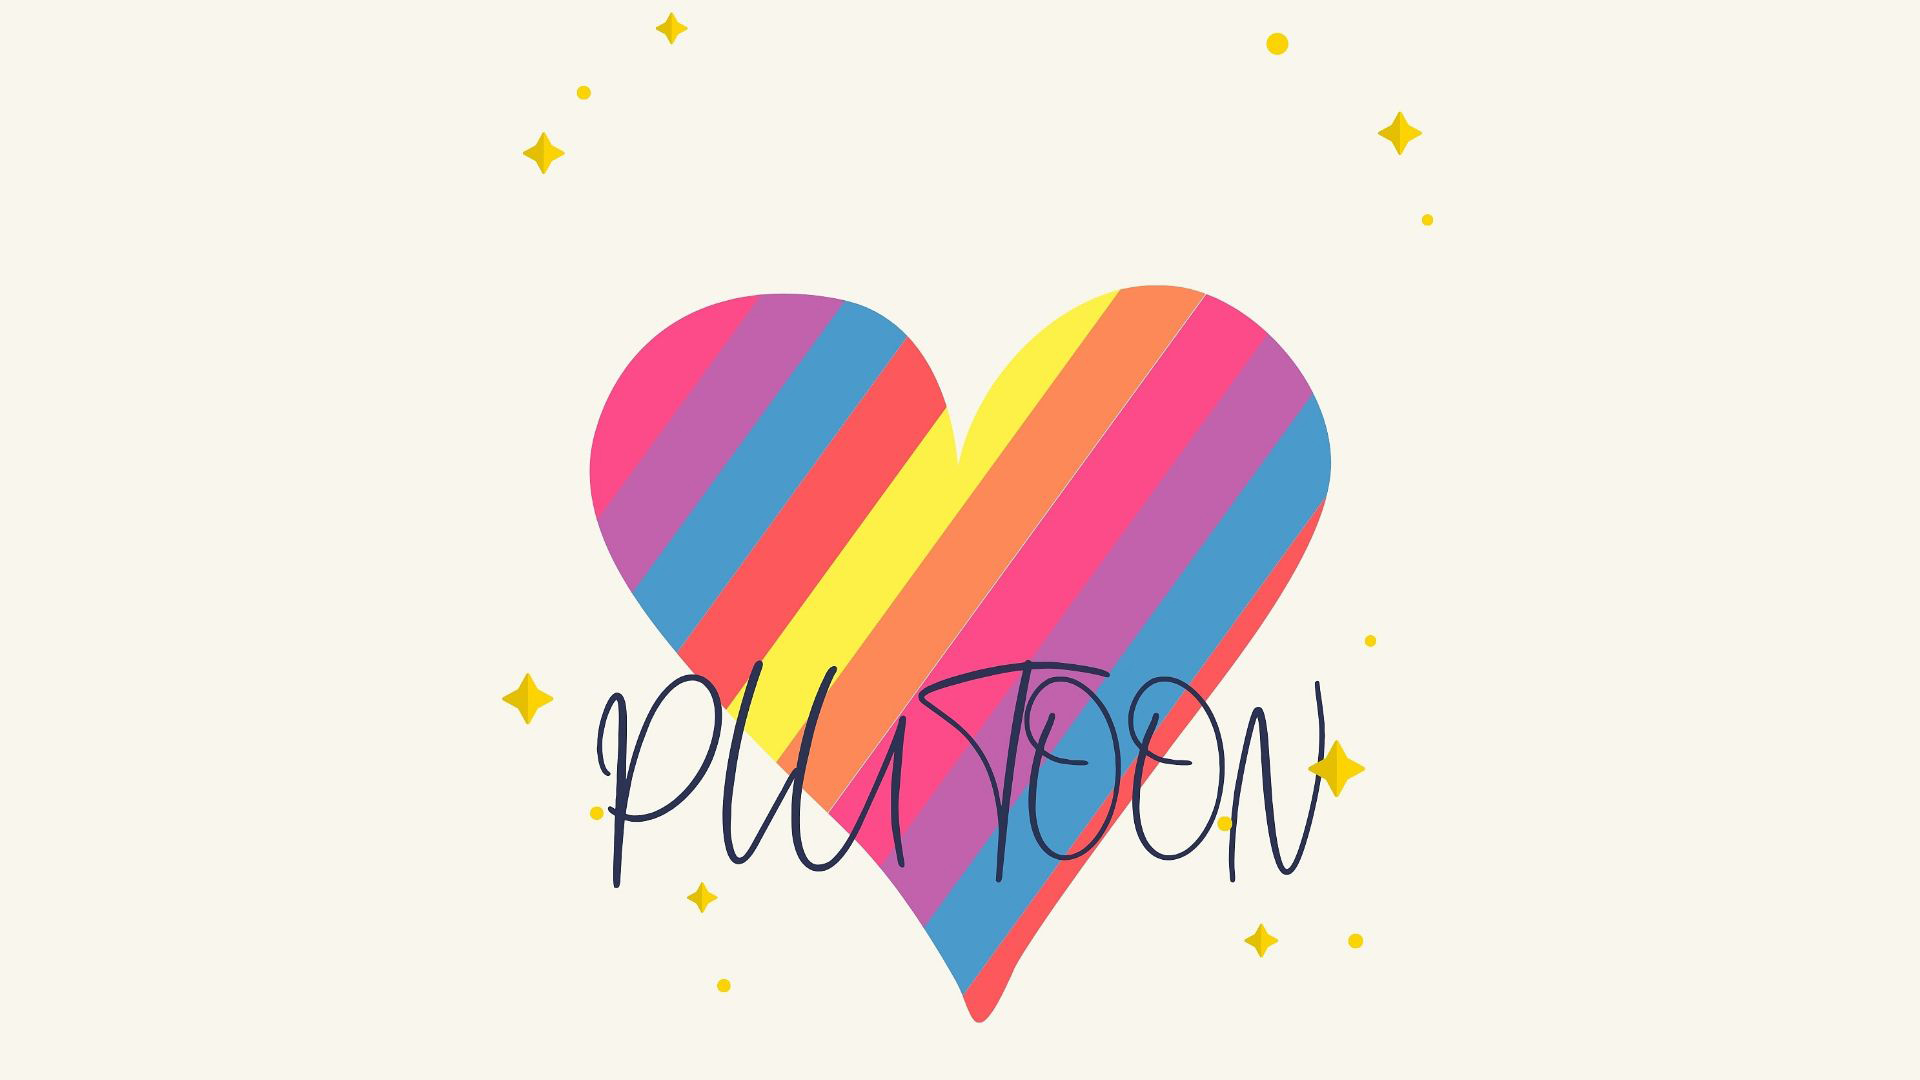 Plutoon